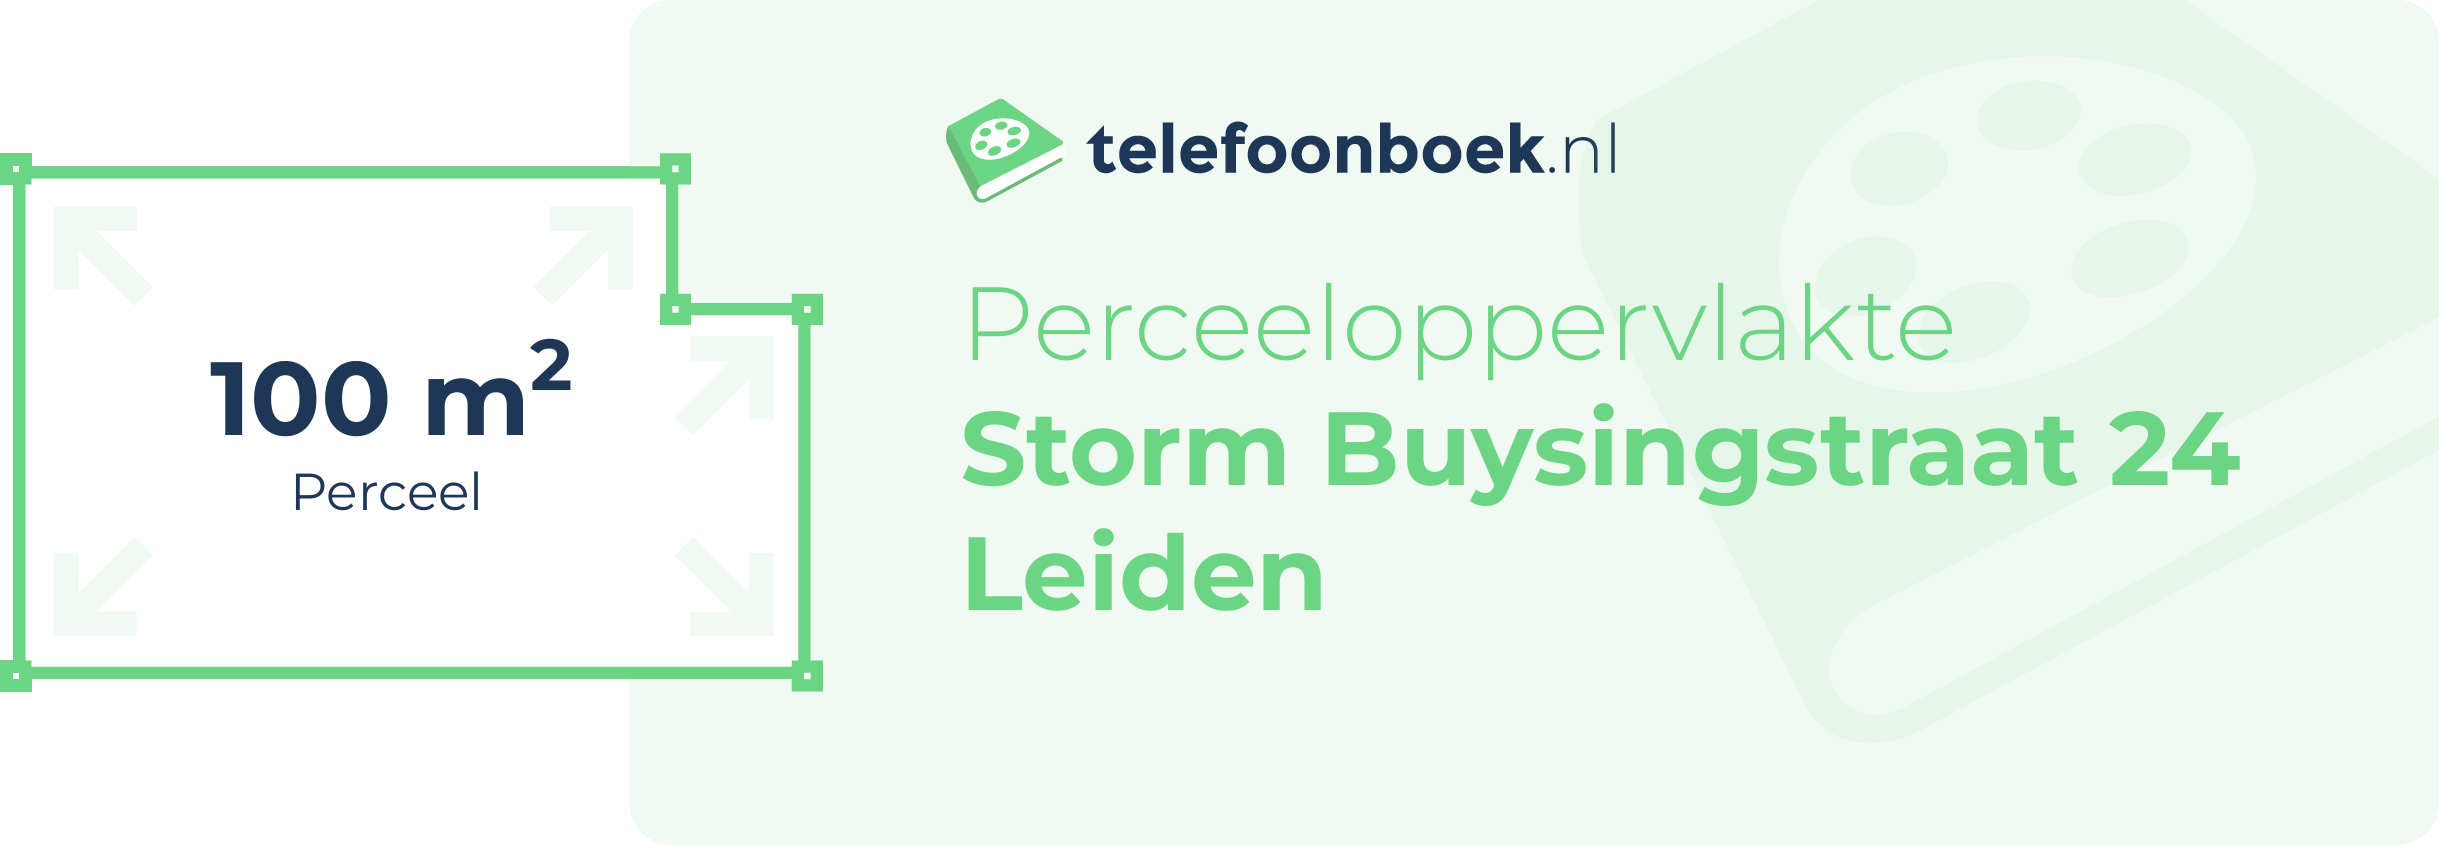 Perceeloppervlakte Storm Buysingstraat 24 Leiden